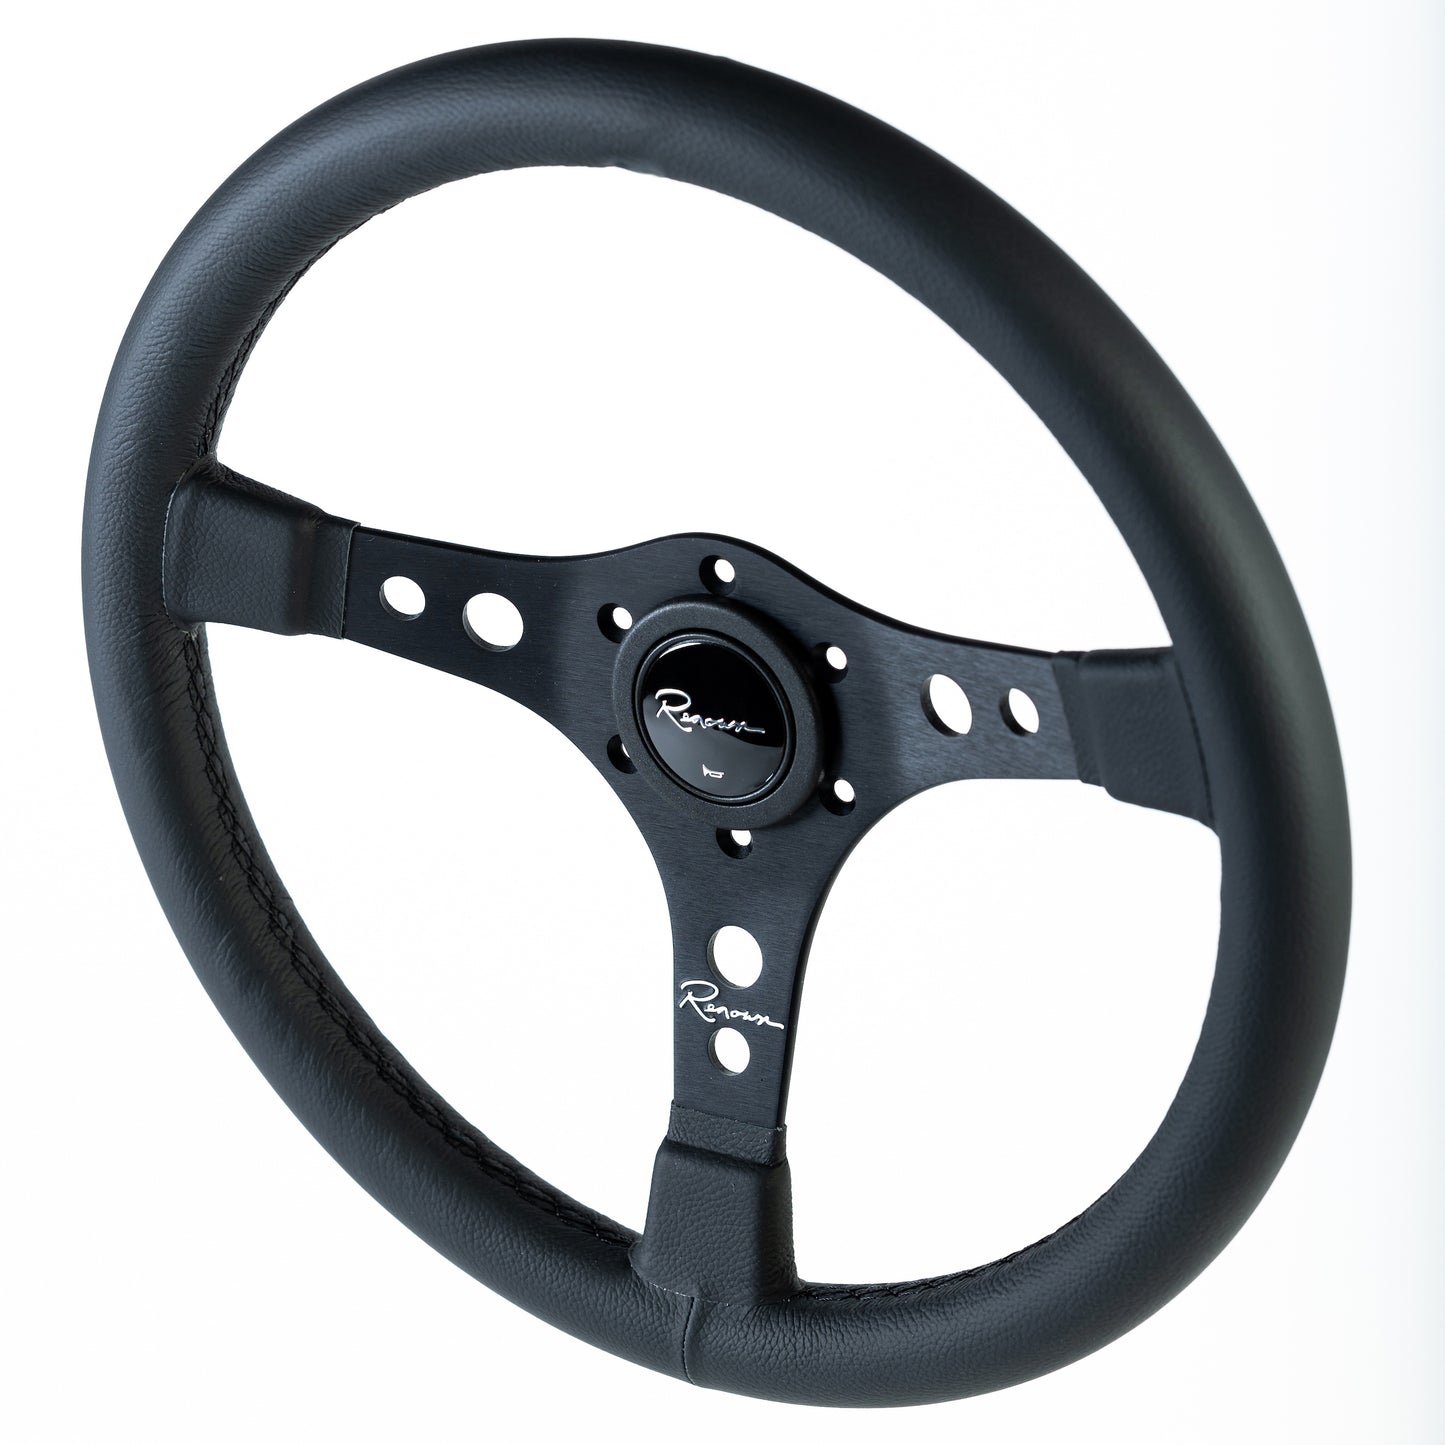 Renown Riverside Dark Steering Wheel